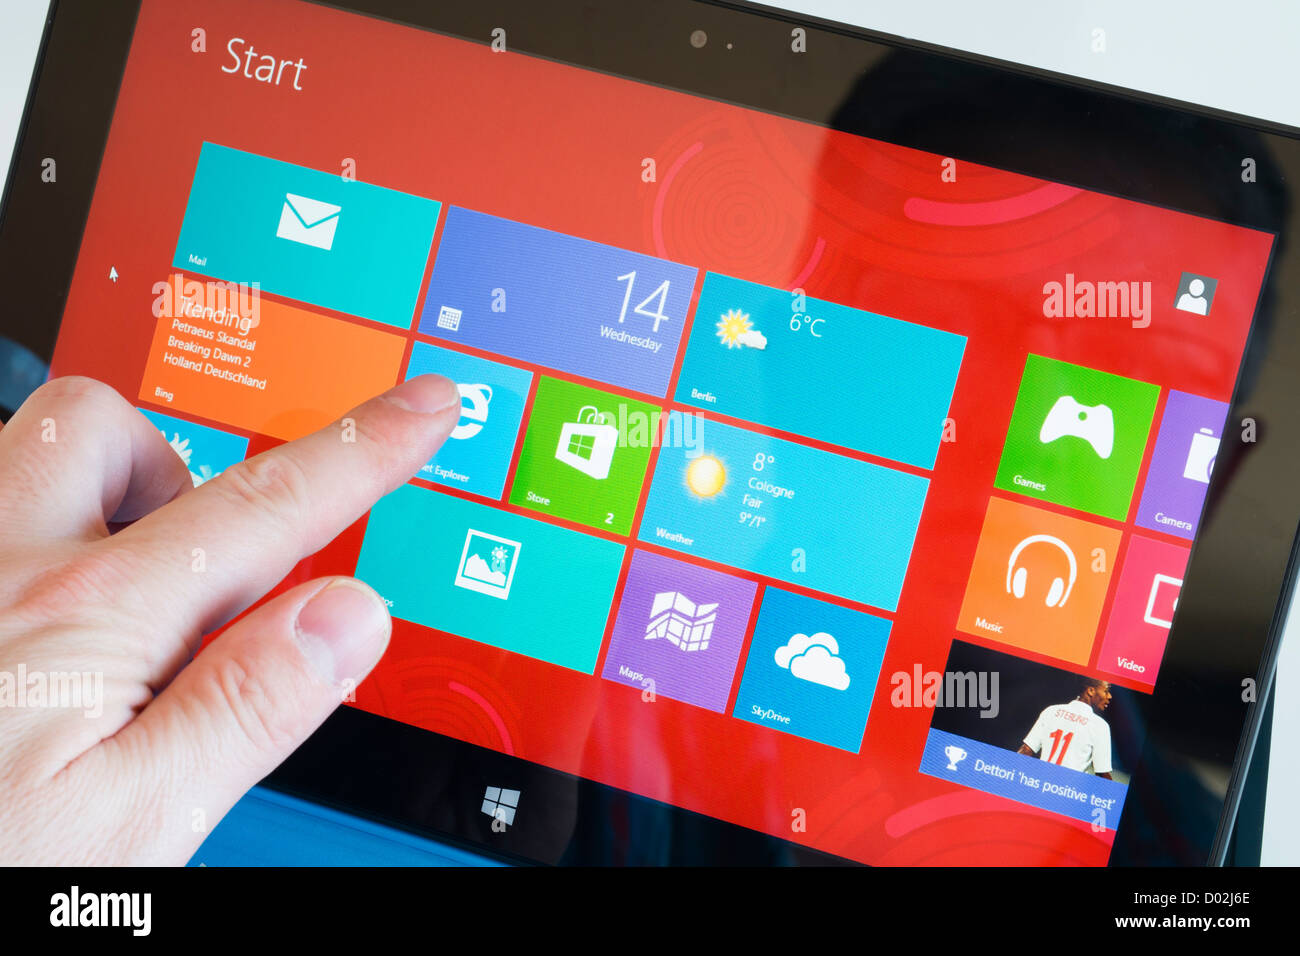 Detai von Windows 8 Startbildschirm auf dem Microsoft Surface rt Tablet PC  Stockfotografie - Alamy